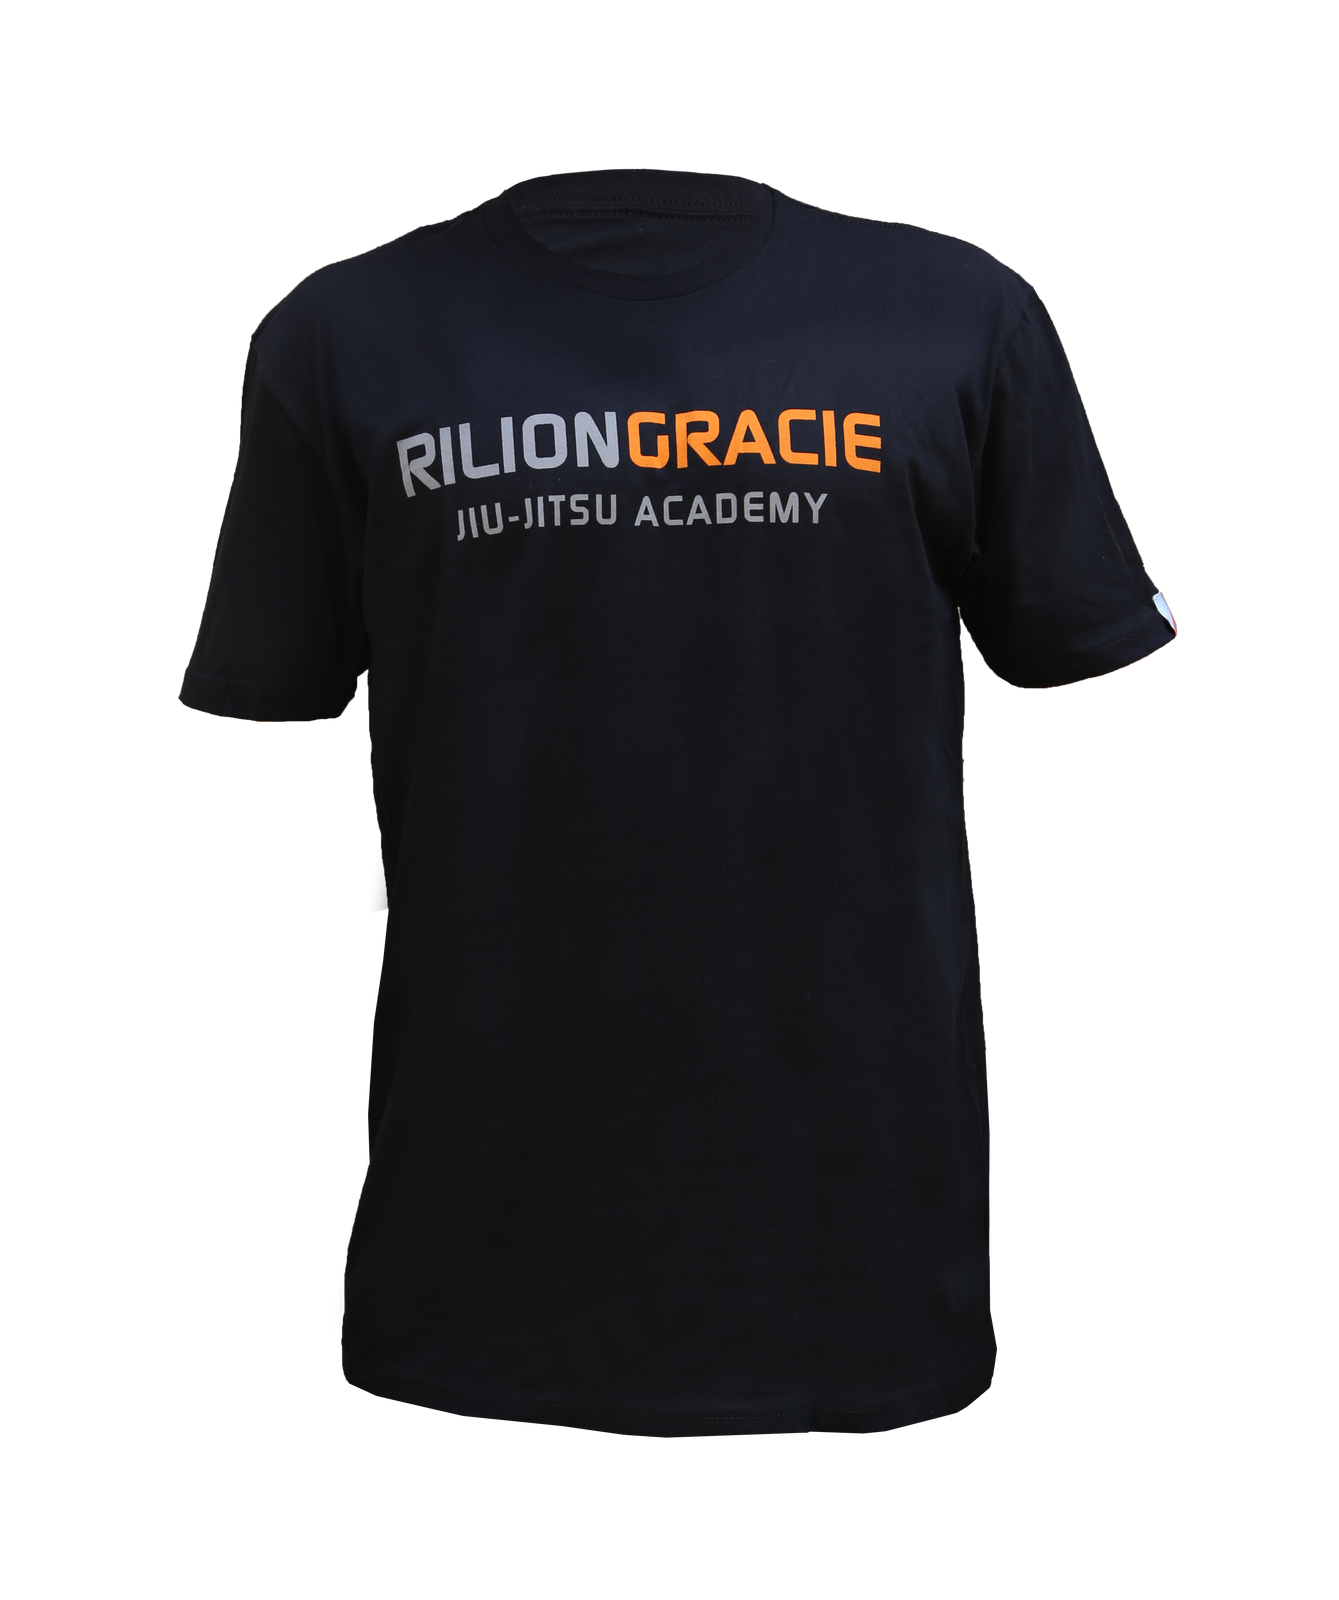 Rilion Gracie Classic Kids T-Shirt